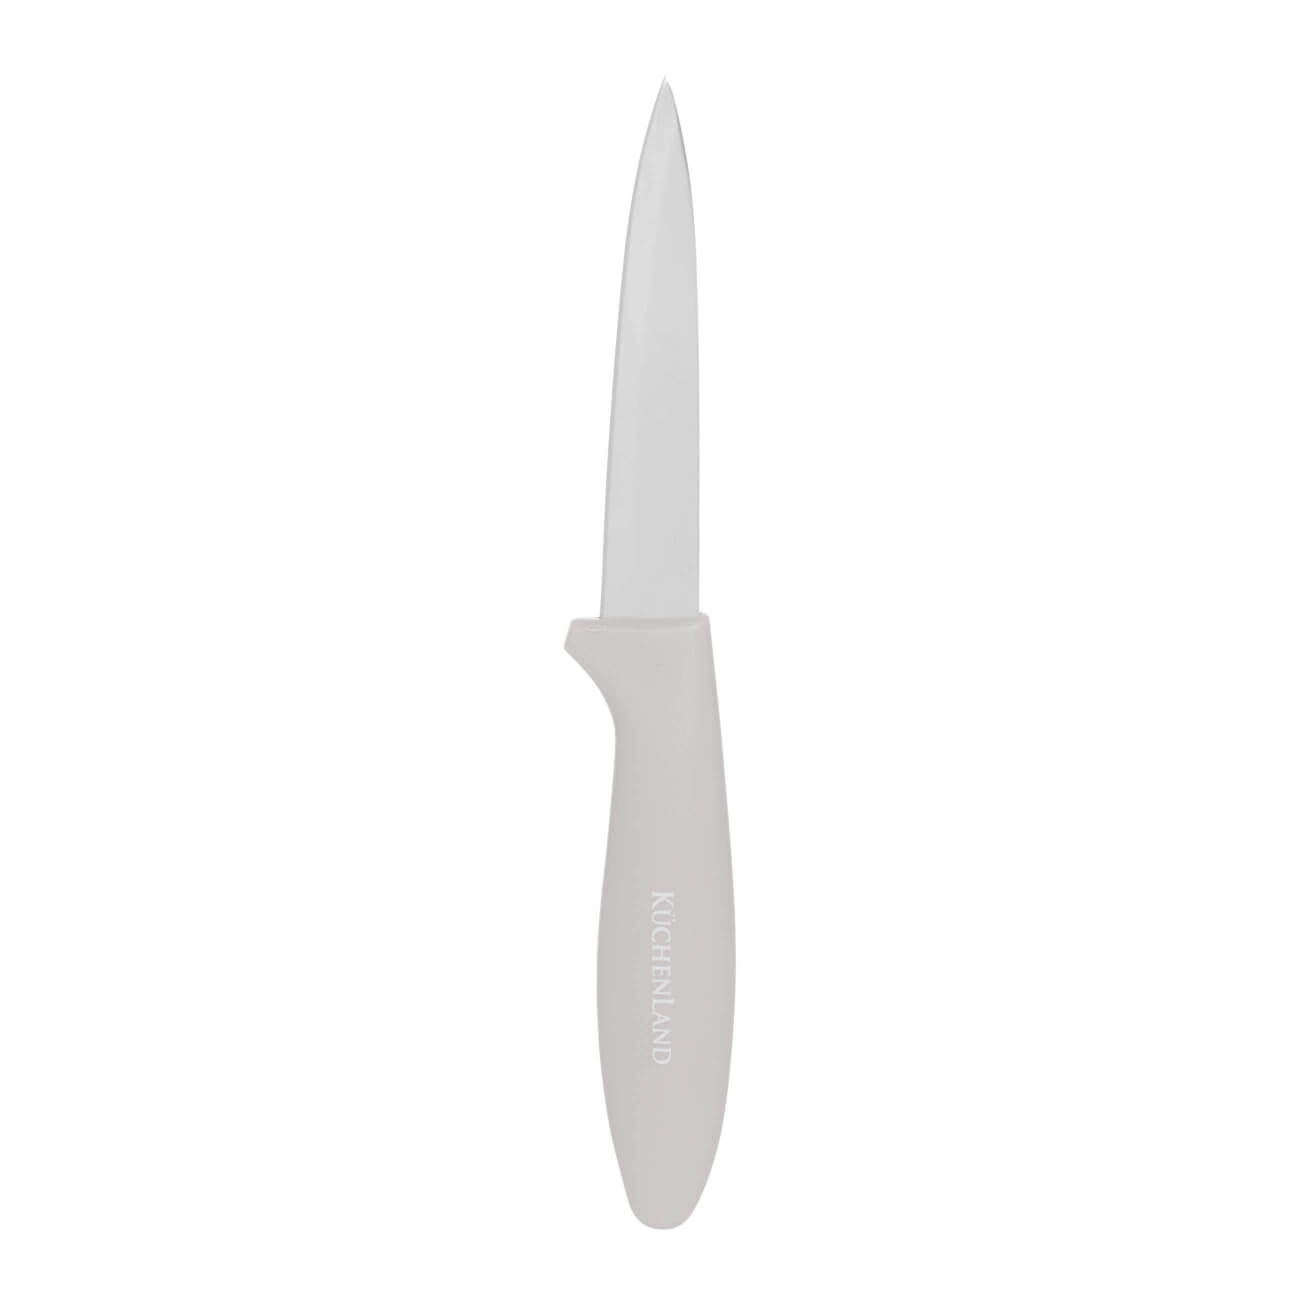 Нож для чистки овощей, 9 см, сталь/пластик, серо-коричневый, Regular нож кухонный для овощей sankei 90 мм masahiro 35924 сталь aus 8 стабилизированная древесина коричневый